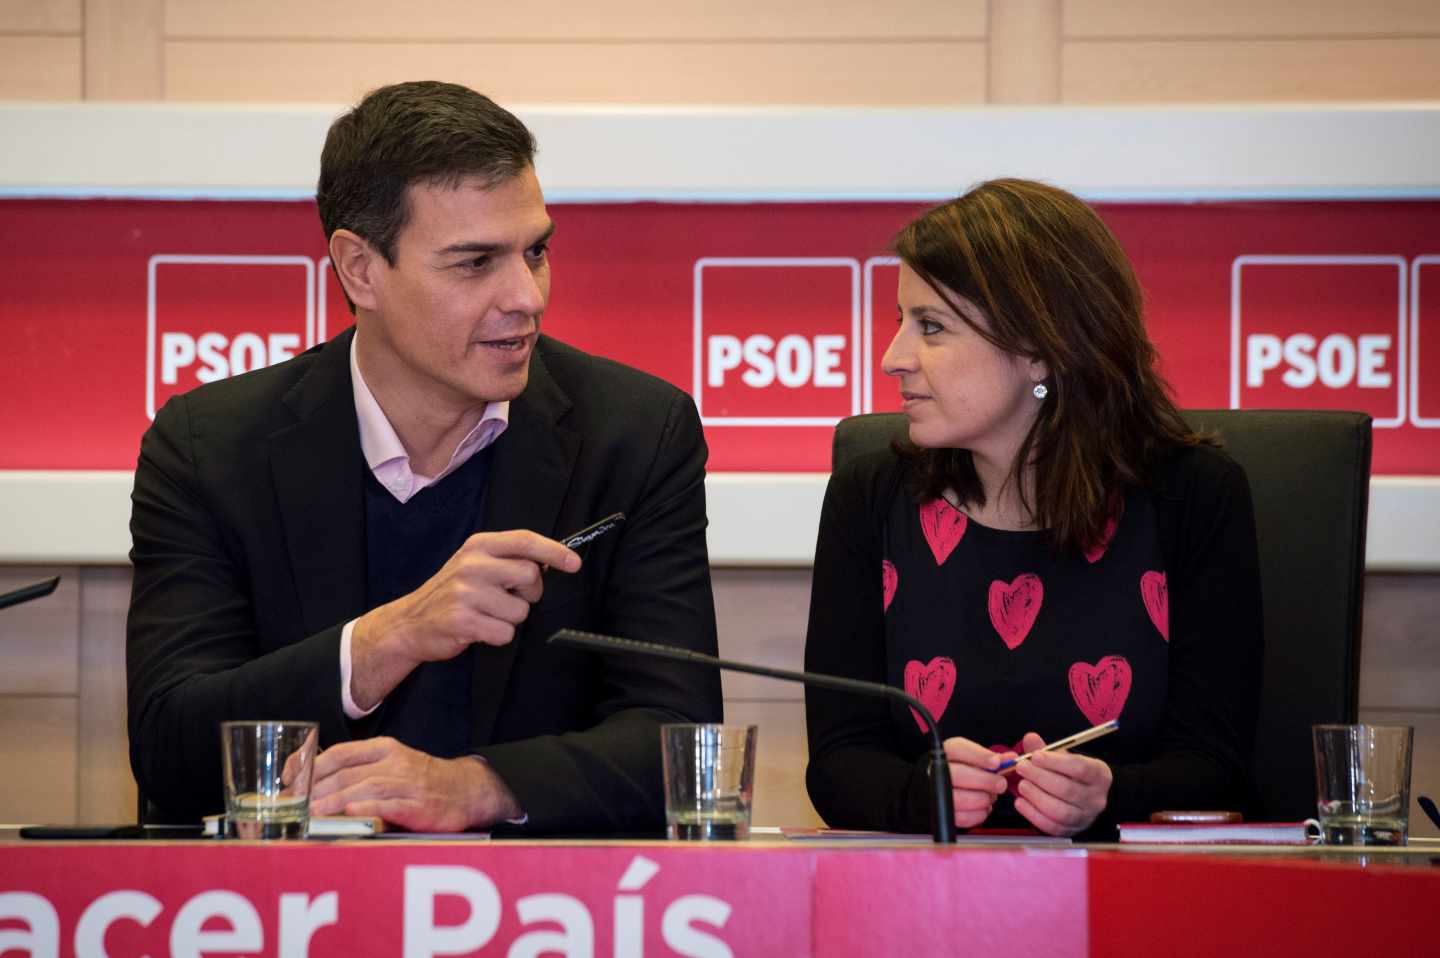 El PSOE eleva el discurso del miedo: "Tenemos al fascismo a las puertas del Congreso"